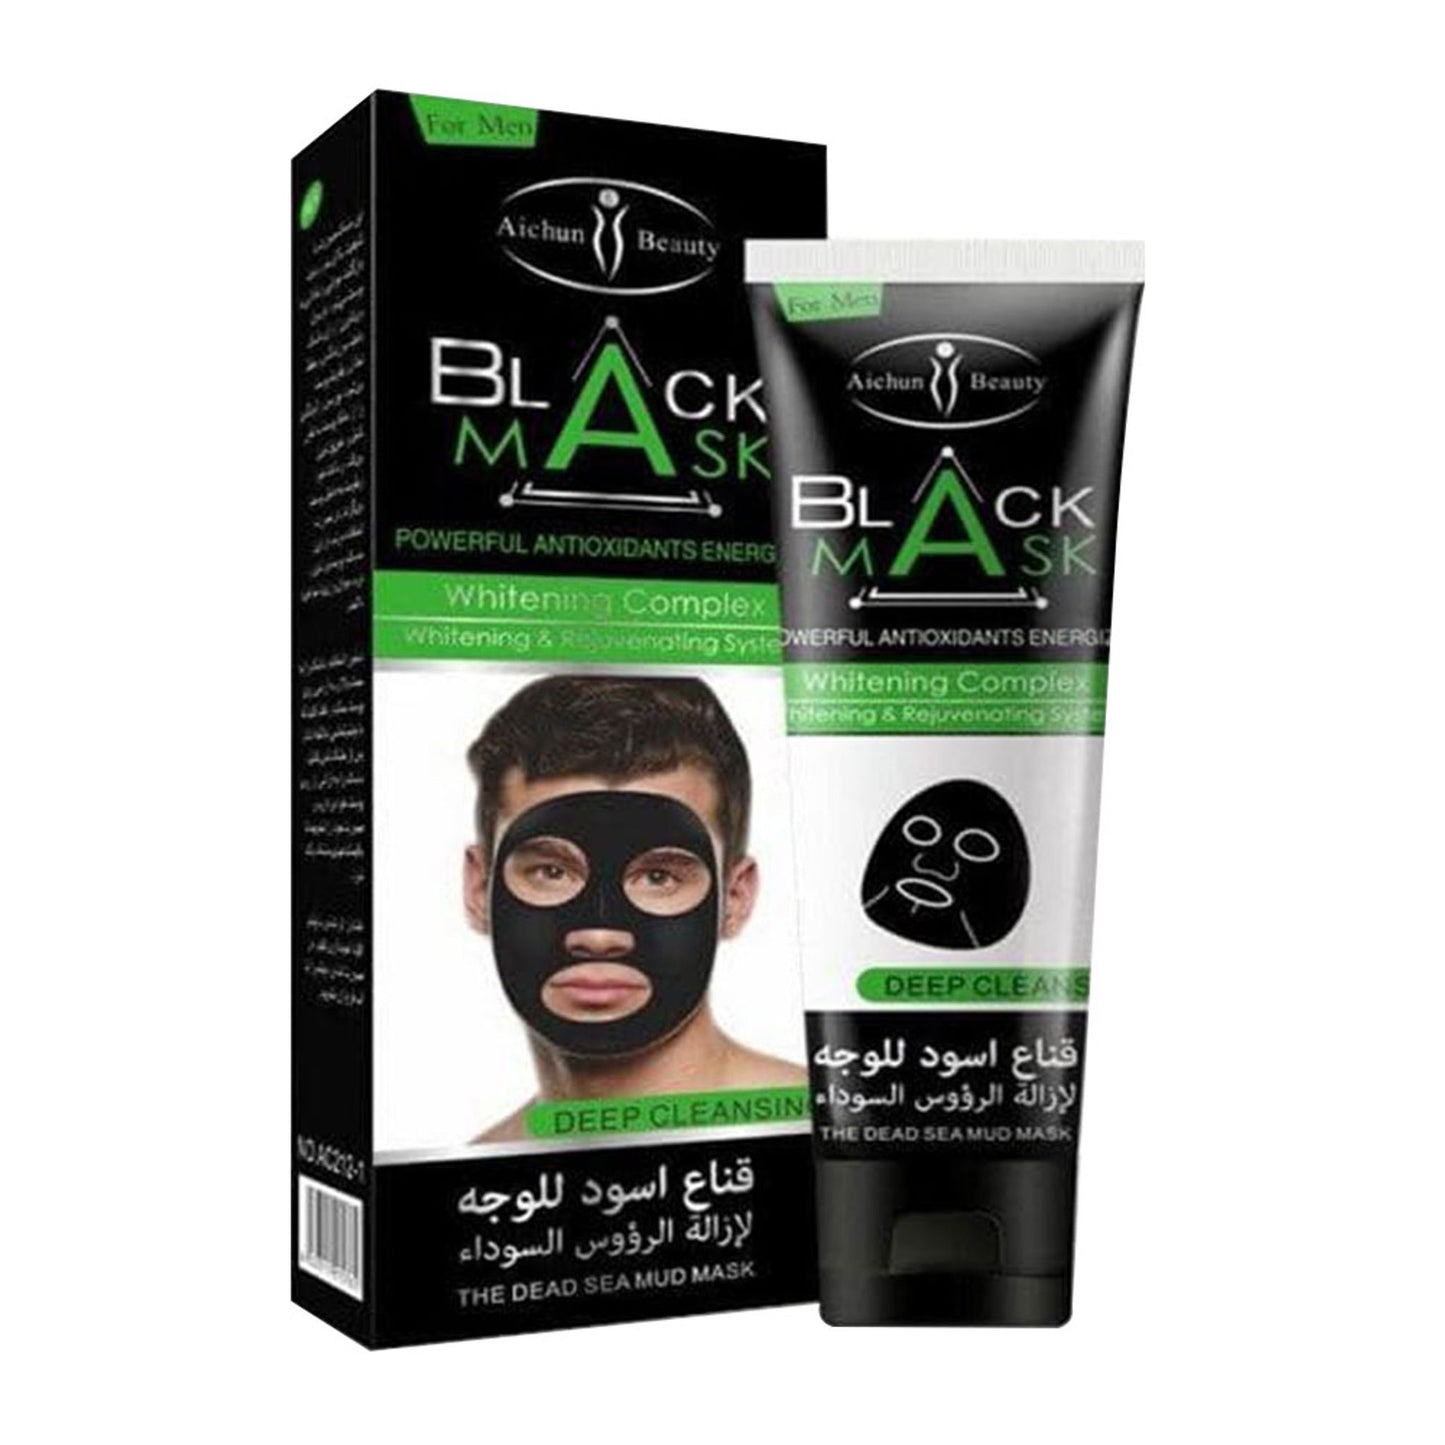 Aichun Beauty Black Mask Multi |120g